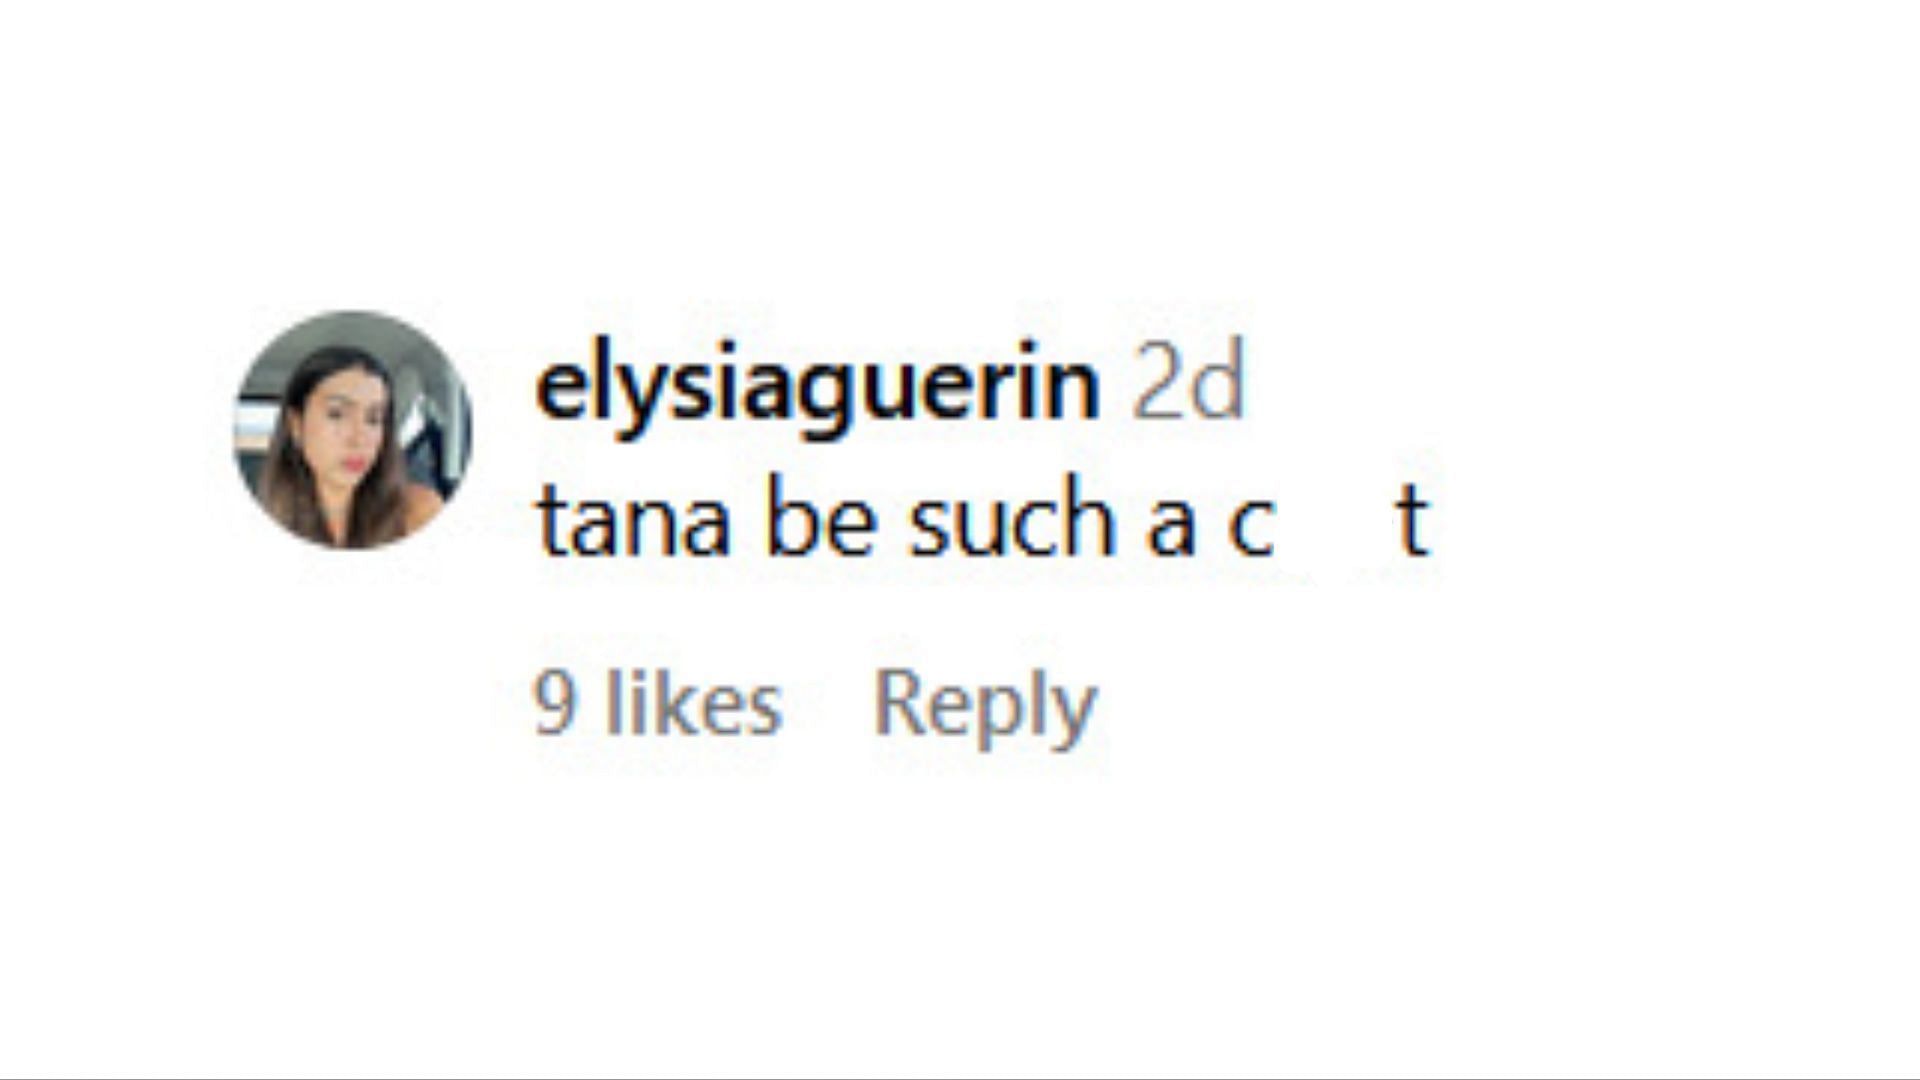 Netizens criticize Tana for her comment (Image via Instagram / @teatoktalk)